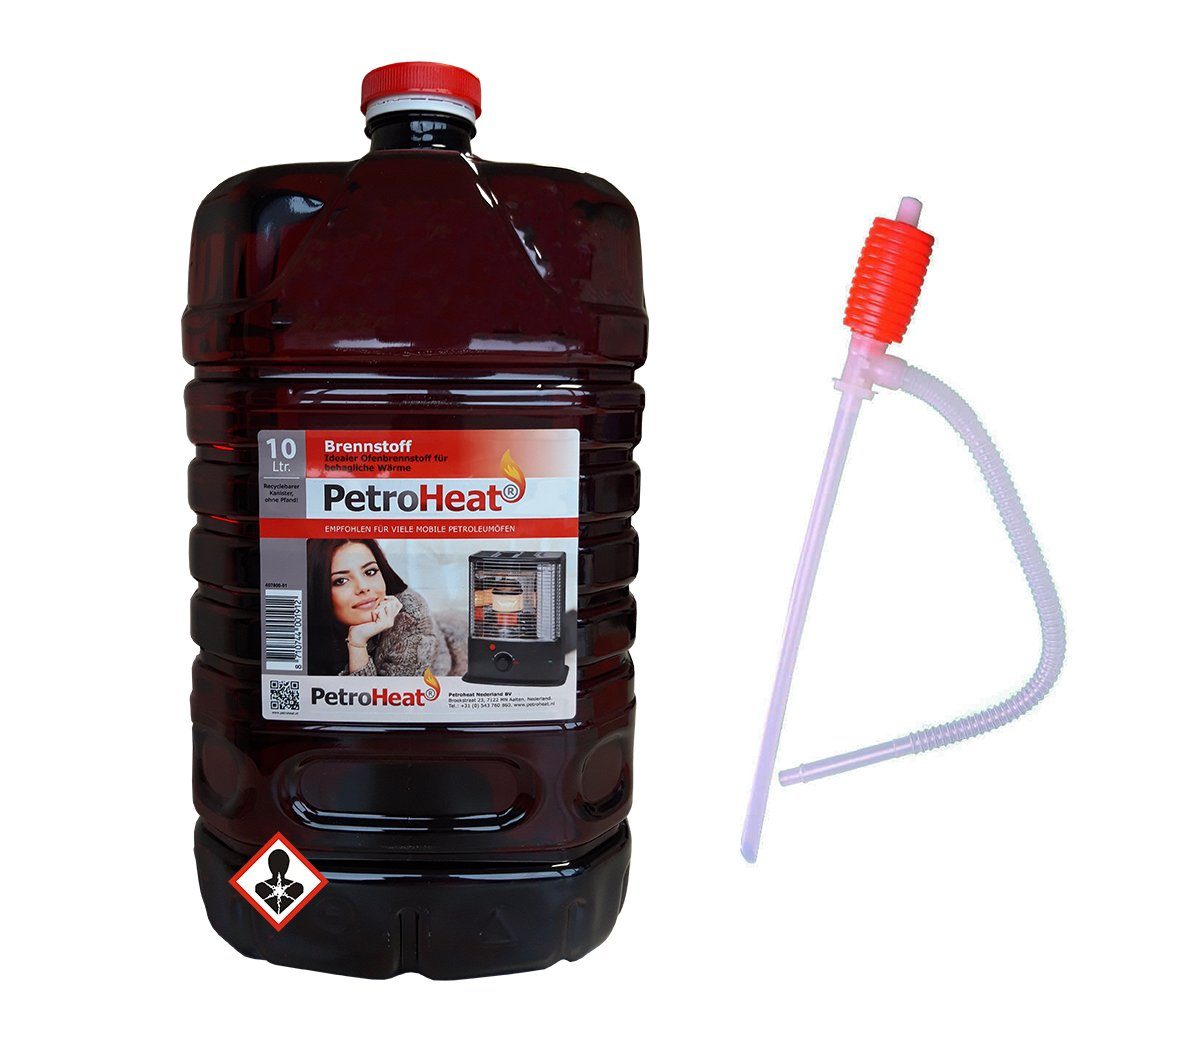 PetroHeat Petroleum 10 Liter Brennstoff geruchsarm für Petroleumofen, mit Handpumpe, für mobile Petroleum-Heizung, Petroleumöfen